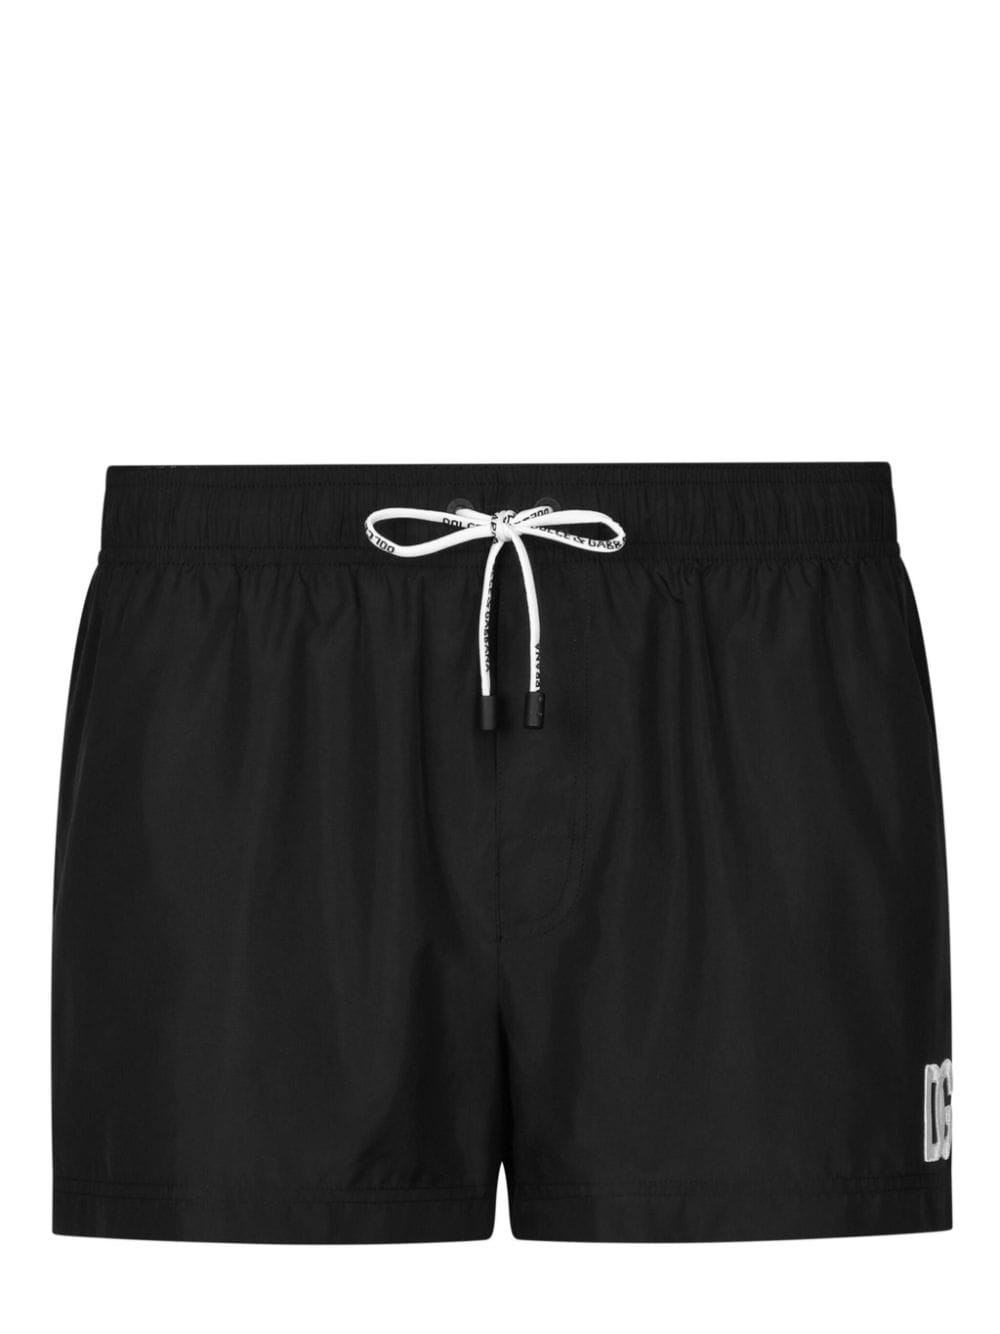 Dolce & Gabbana Beach Shorts In ブラック